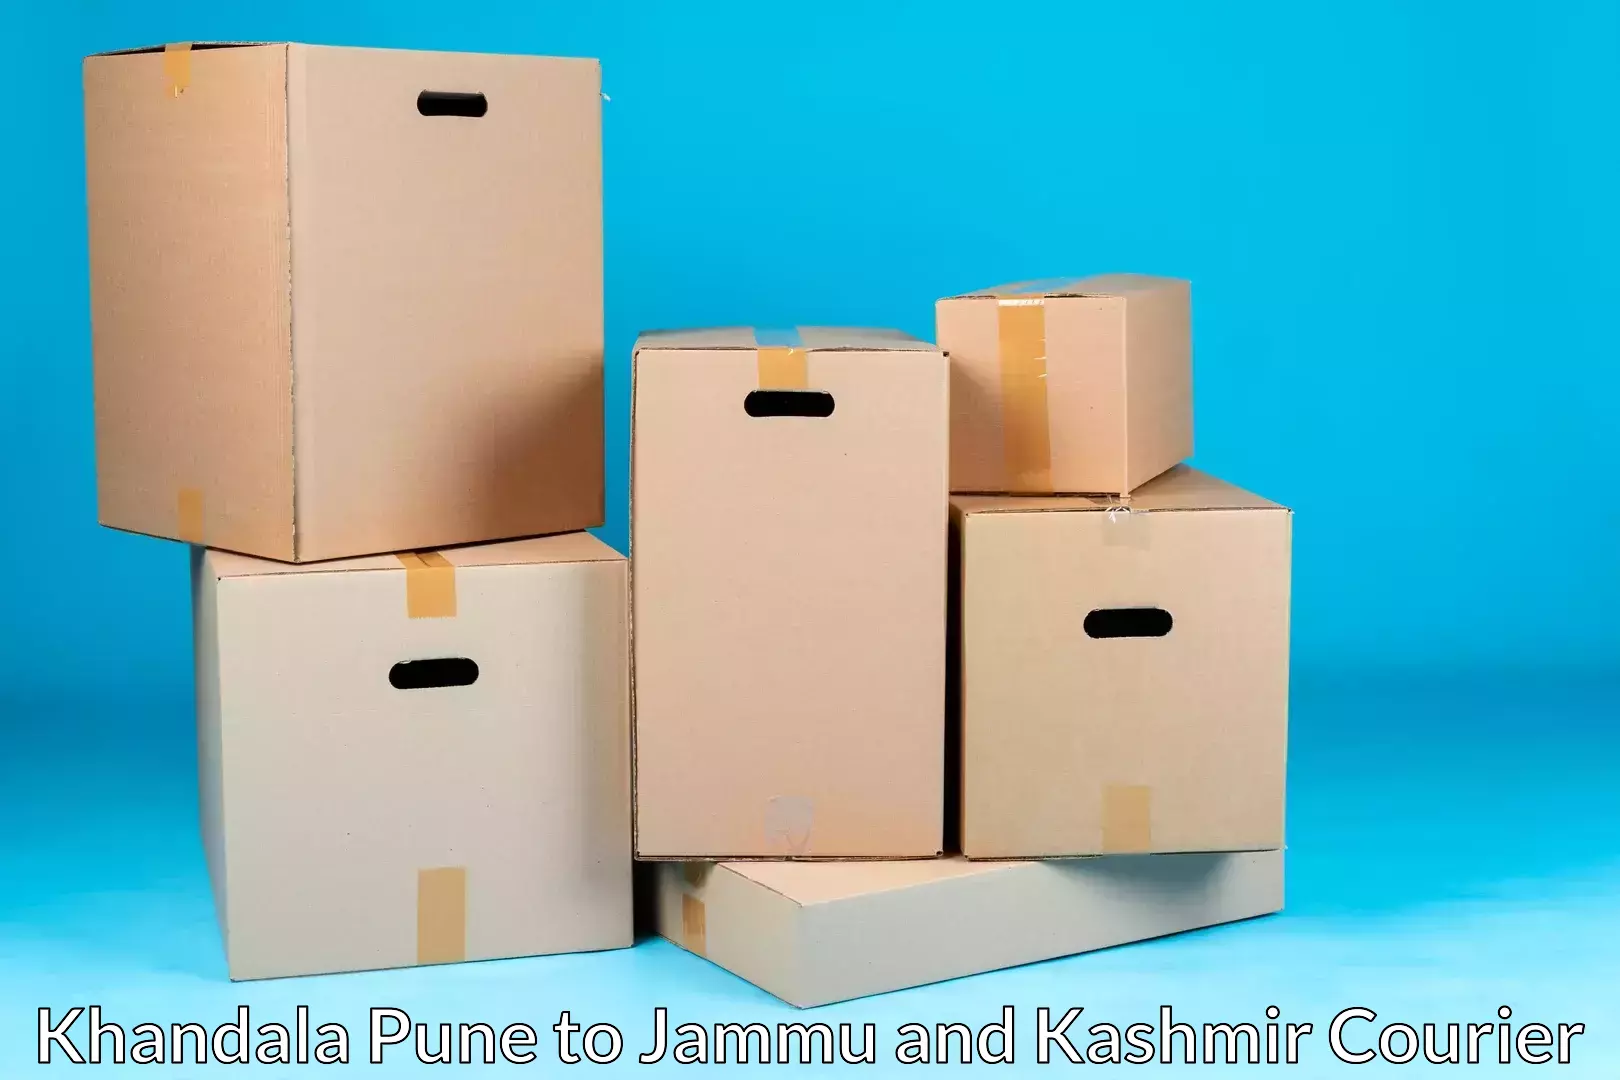 Efficient packing and moving Khandala Pune to Rajouri